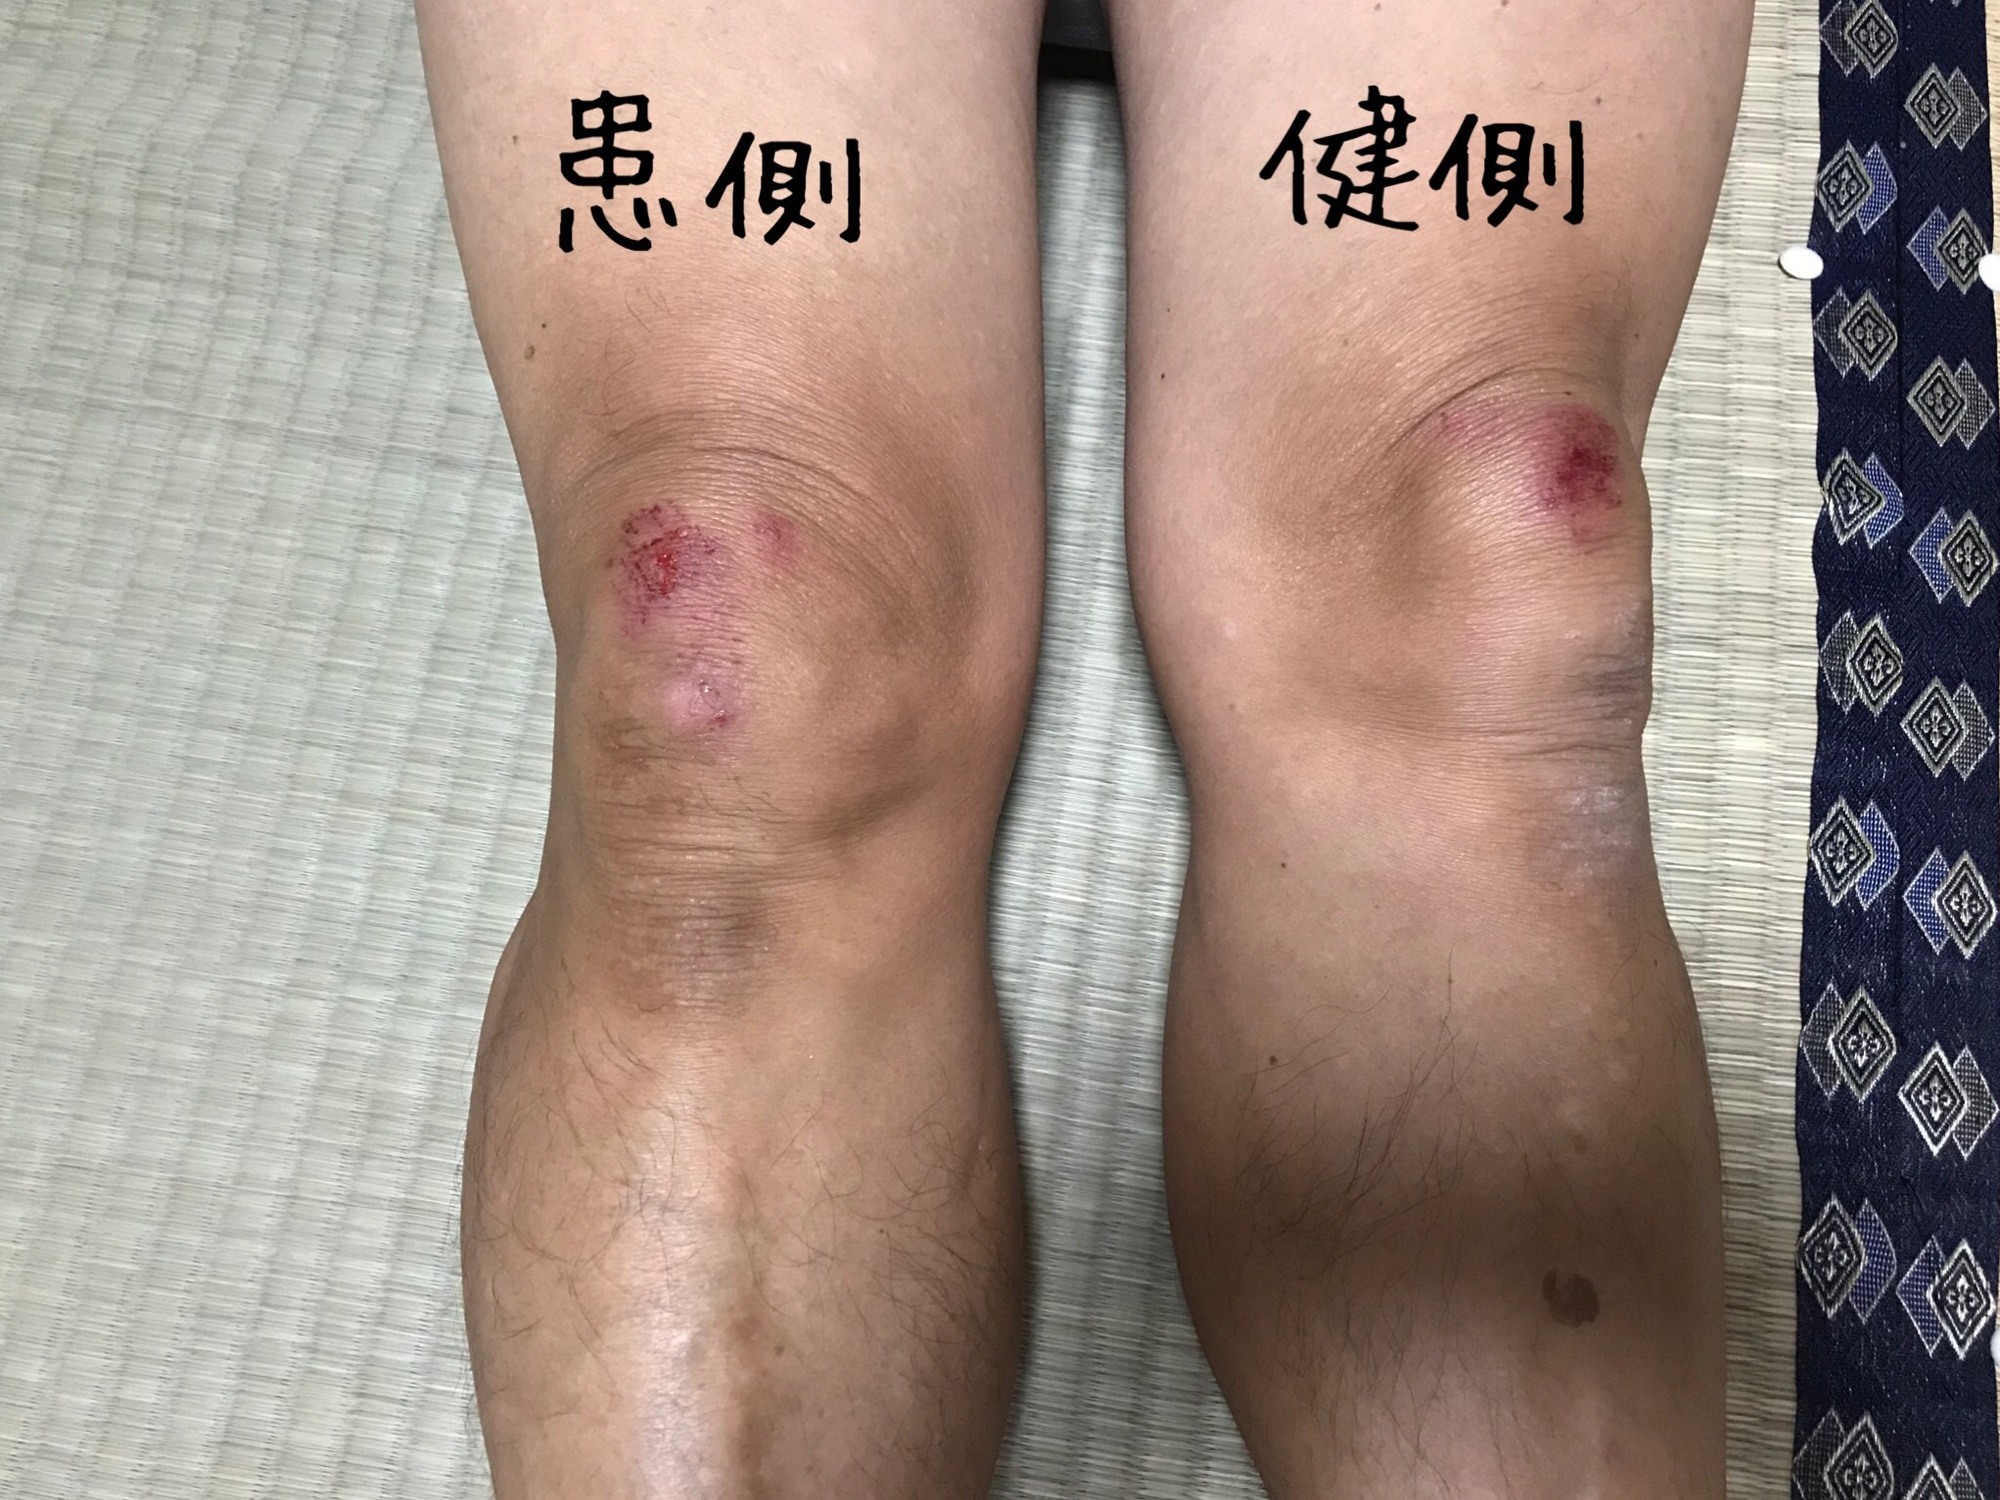 転倒で膝を強打 歩けていても骨折の可能性が A T Nagashima Wing 長崎 鍼灸整骨院 めがね橋へ